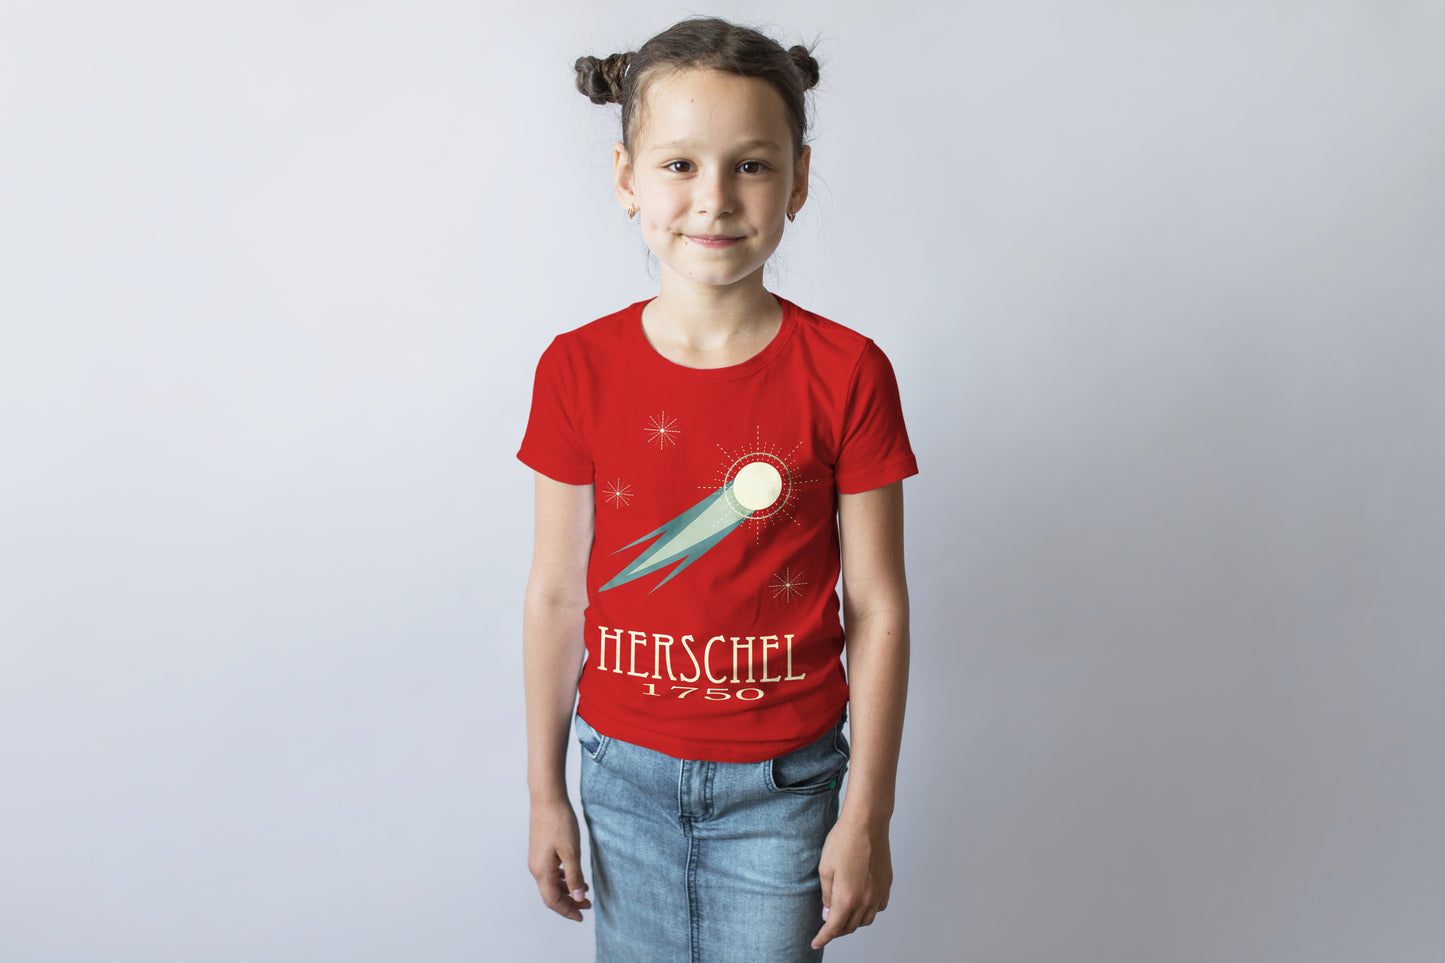 Herschel Astronomy T-shirt, Caroline Herschel Comet and Stars Graphic Tee